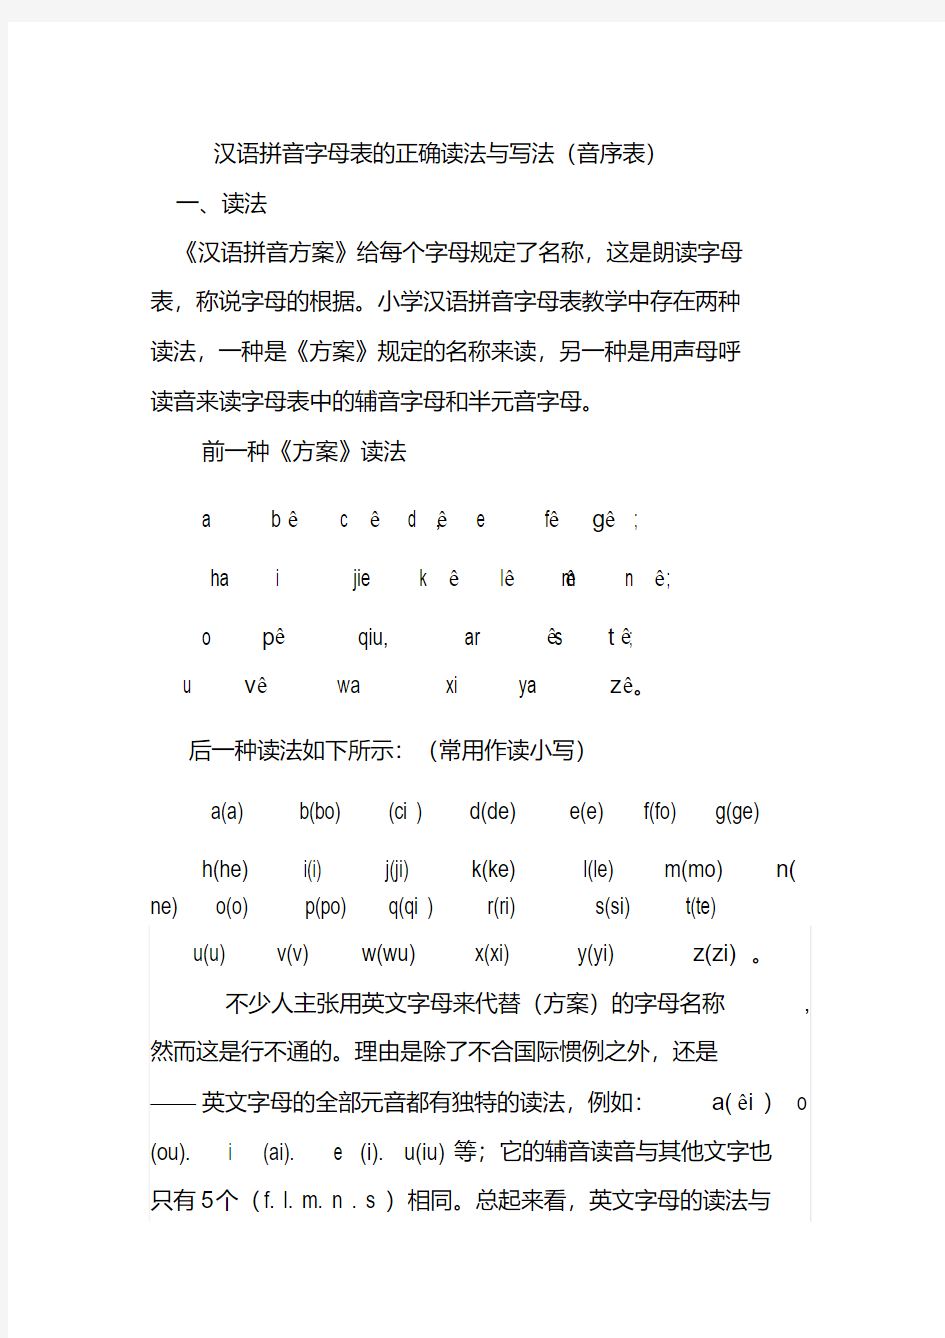 汉语拼音字母表正确读法与写法(音序表)